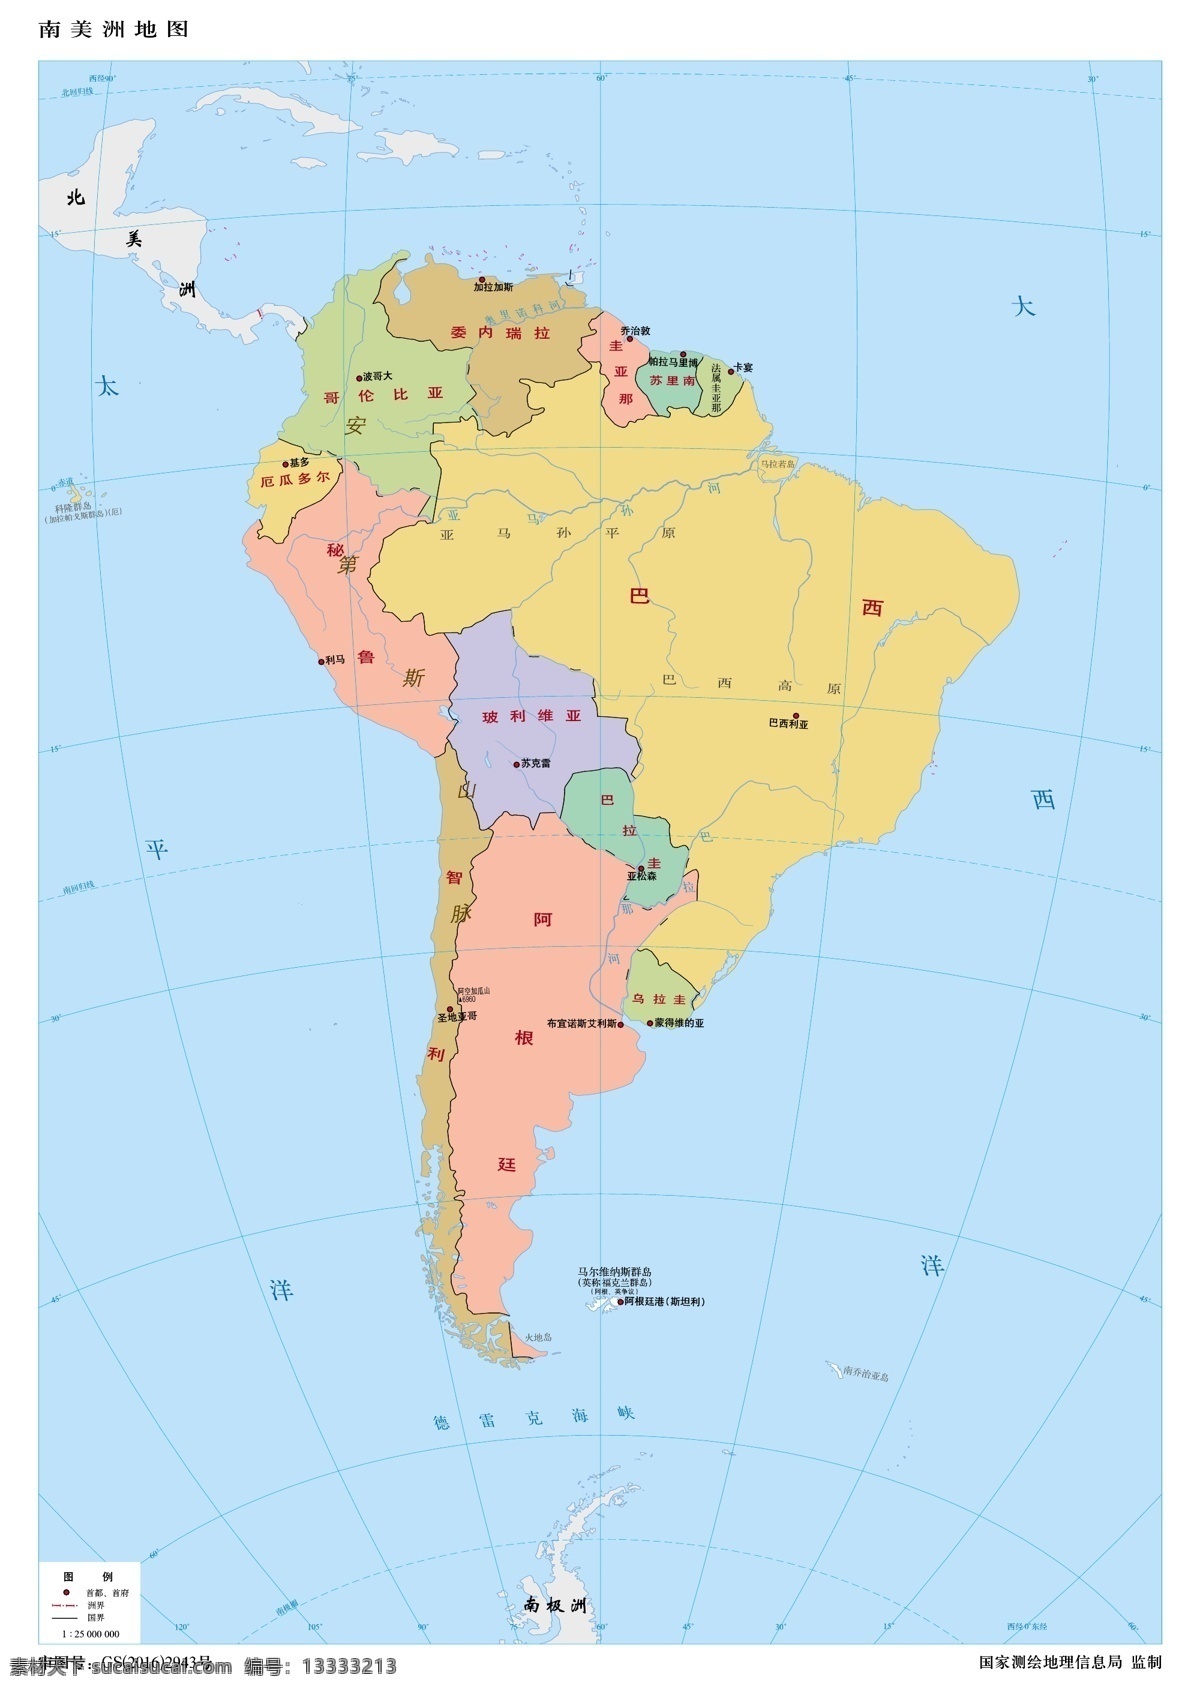 万 南美洲 地图 南美洲地图 标准南美洲 南美洲素材 矢量南美洲 矢量地图